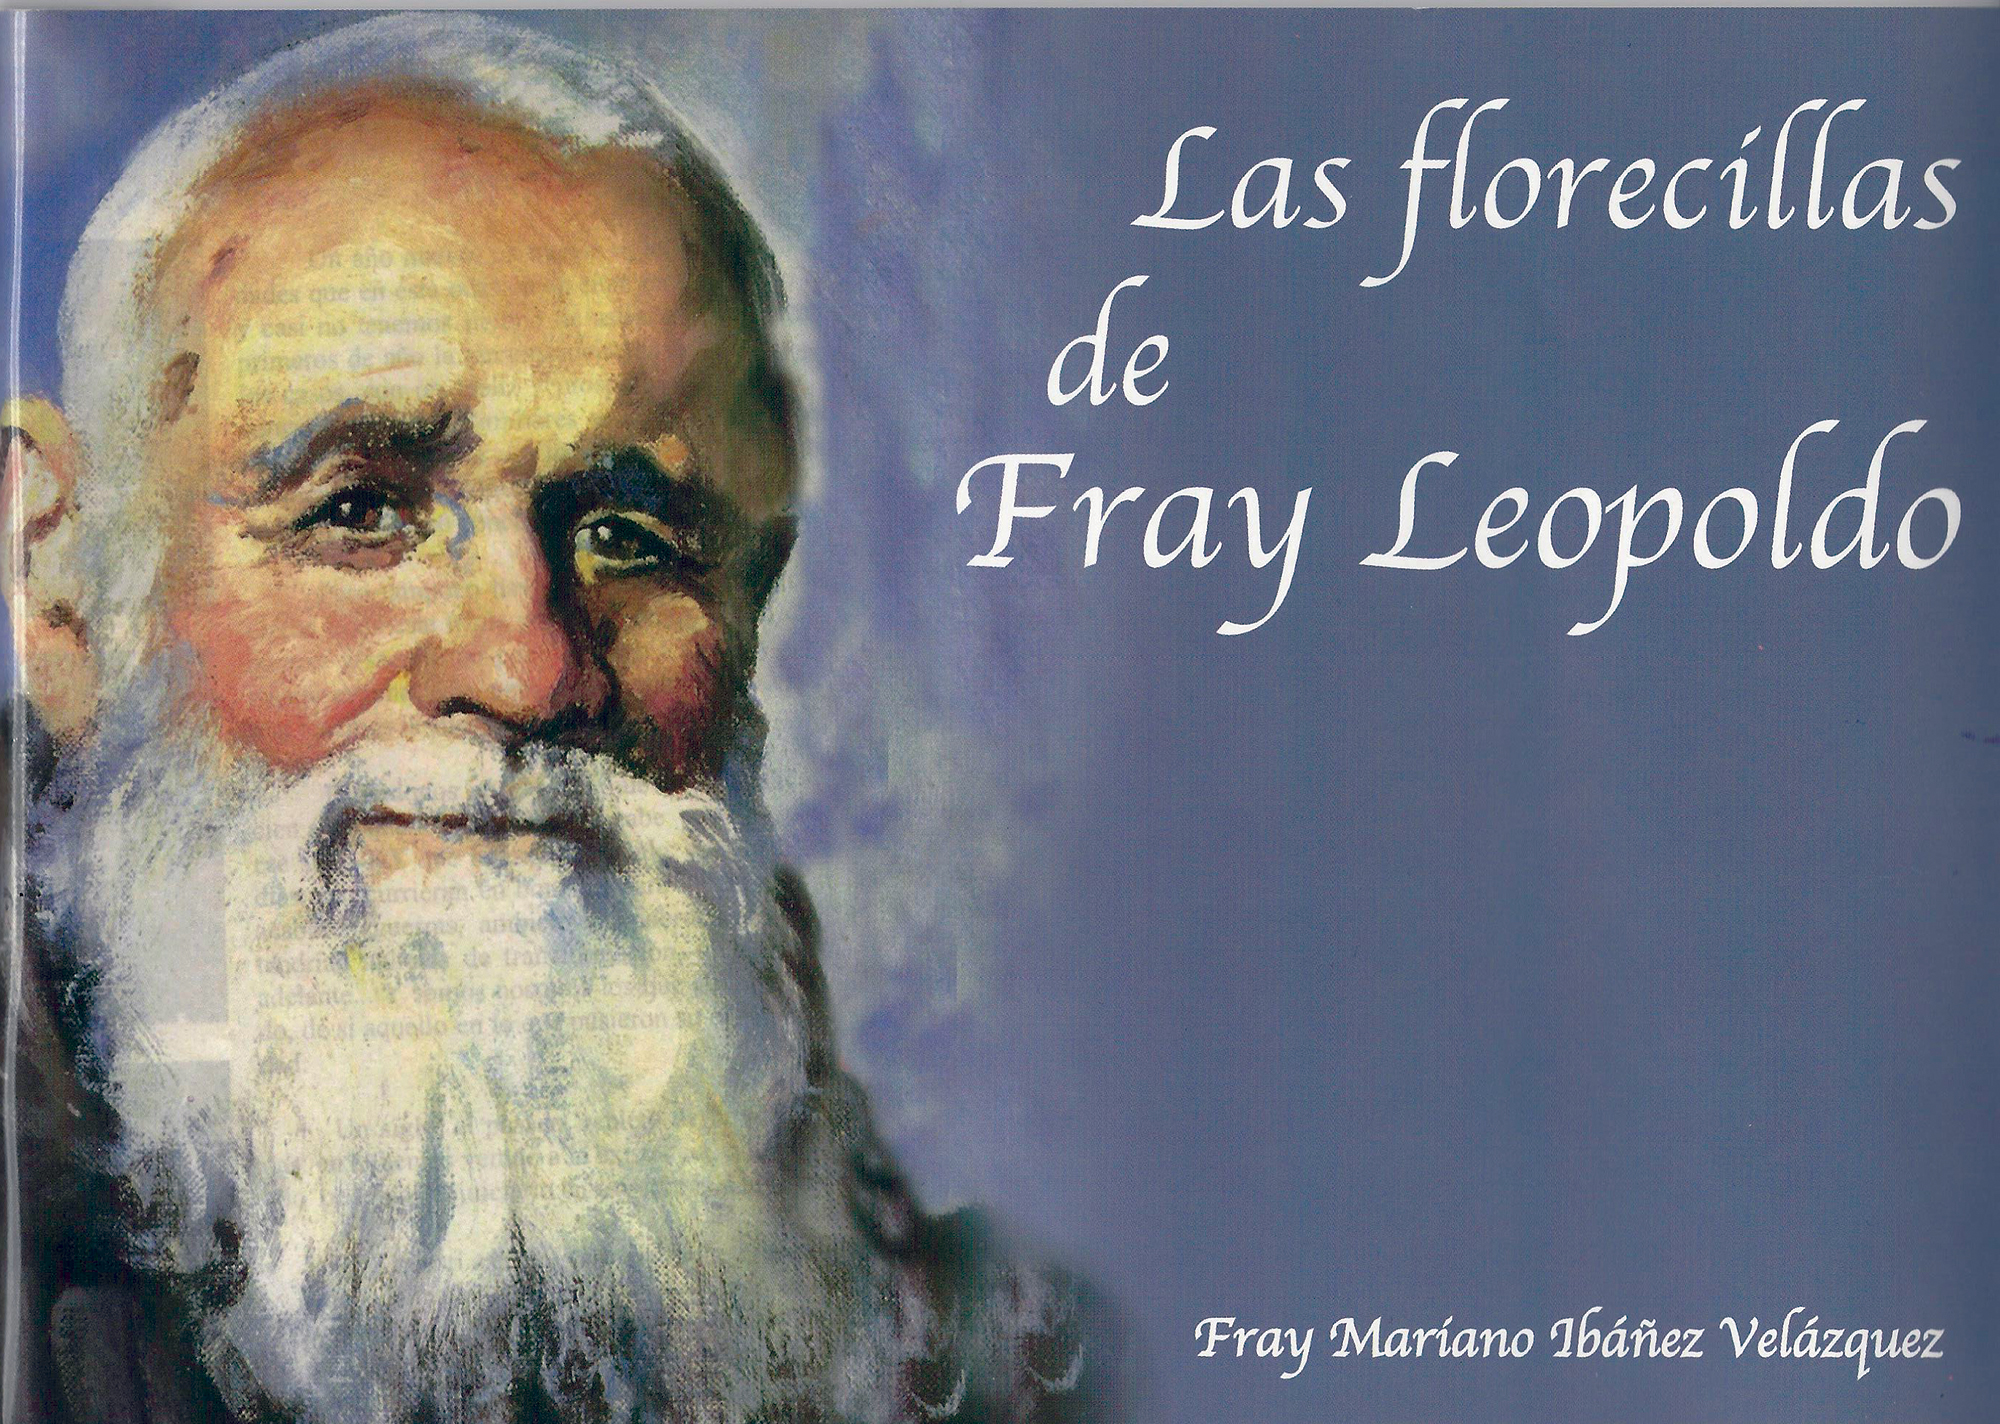 Las florecillas de fray Leopoldo